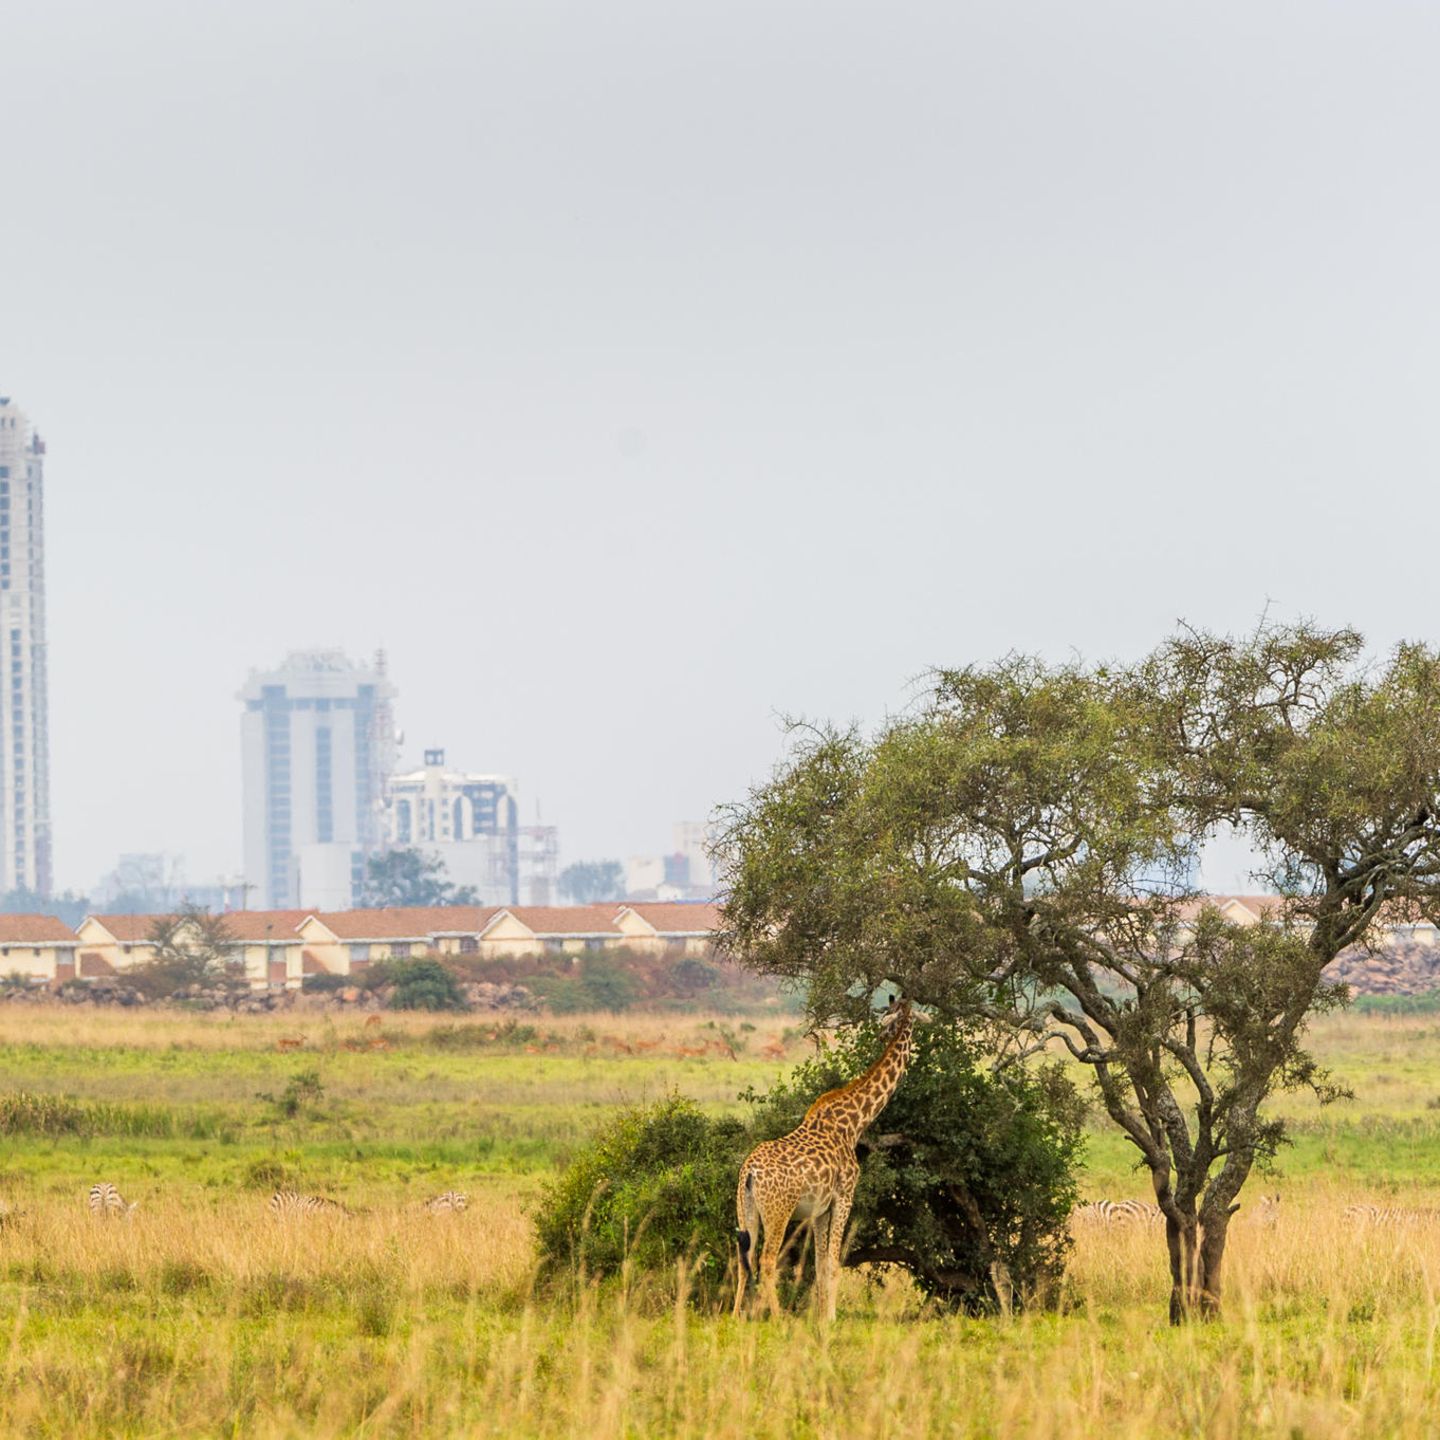 Nairobi ist cool! Kenias Hauptstadt erhebt den Anspruch, globales Kulturzentrum zu sein und ist dabei, den kolonialen Blick abzuschütteln. Die pulsierende Stadt wendet sich ihren eigenen Rhythmen zu, ihren Kunst- und Kulturstätten und ihrer besonderen Kulinarik. Und im Nairobi-Nationalpark im Süden der Stadt warten nicht nur Giraffen auf Besucher:innen.